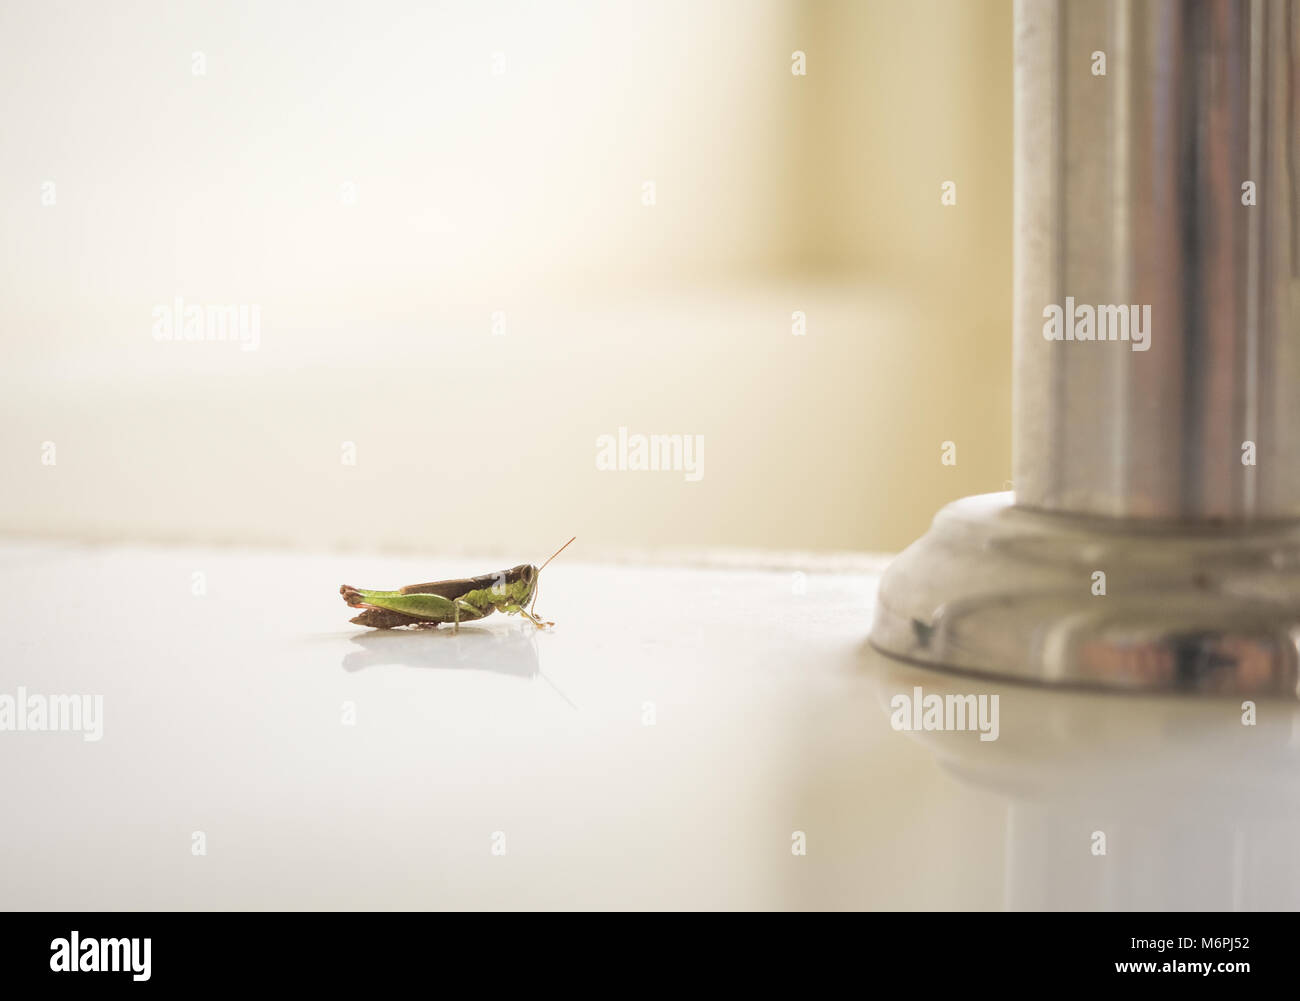 Grasshopper innerhalb des Hauses. Vergleich zwischen kleinen Insekt und Metall Säule Stockfoto